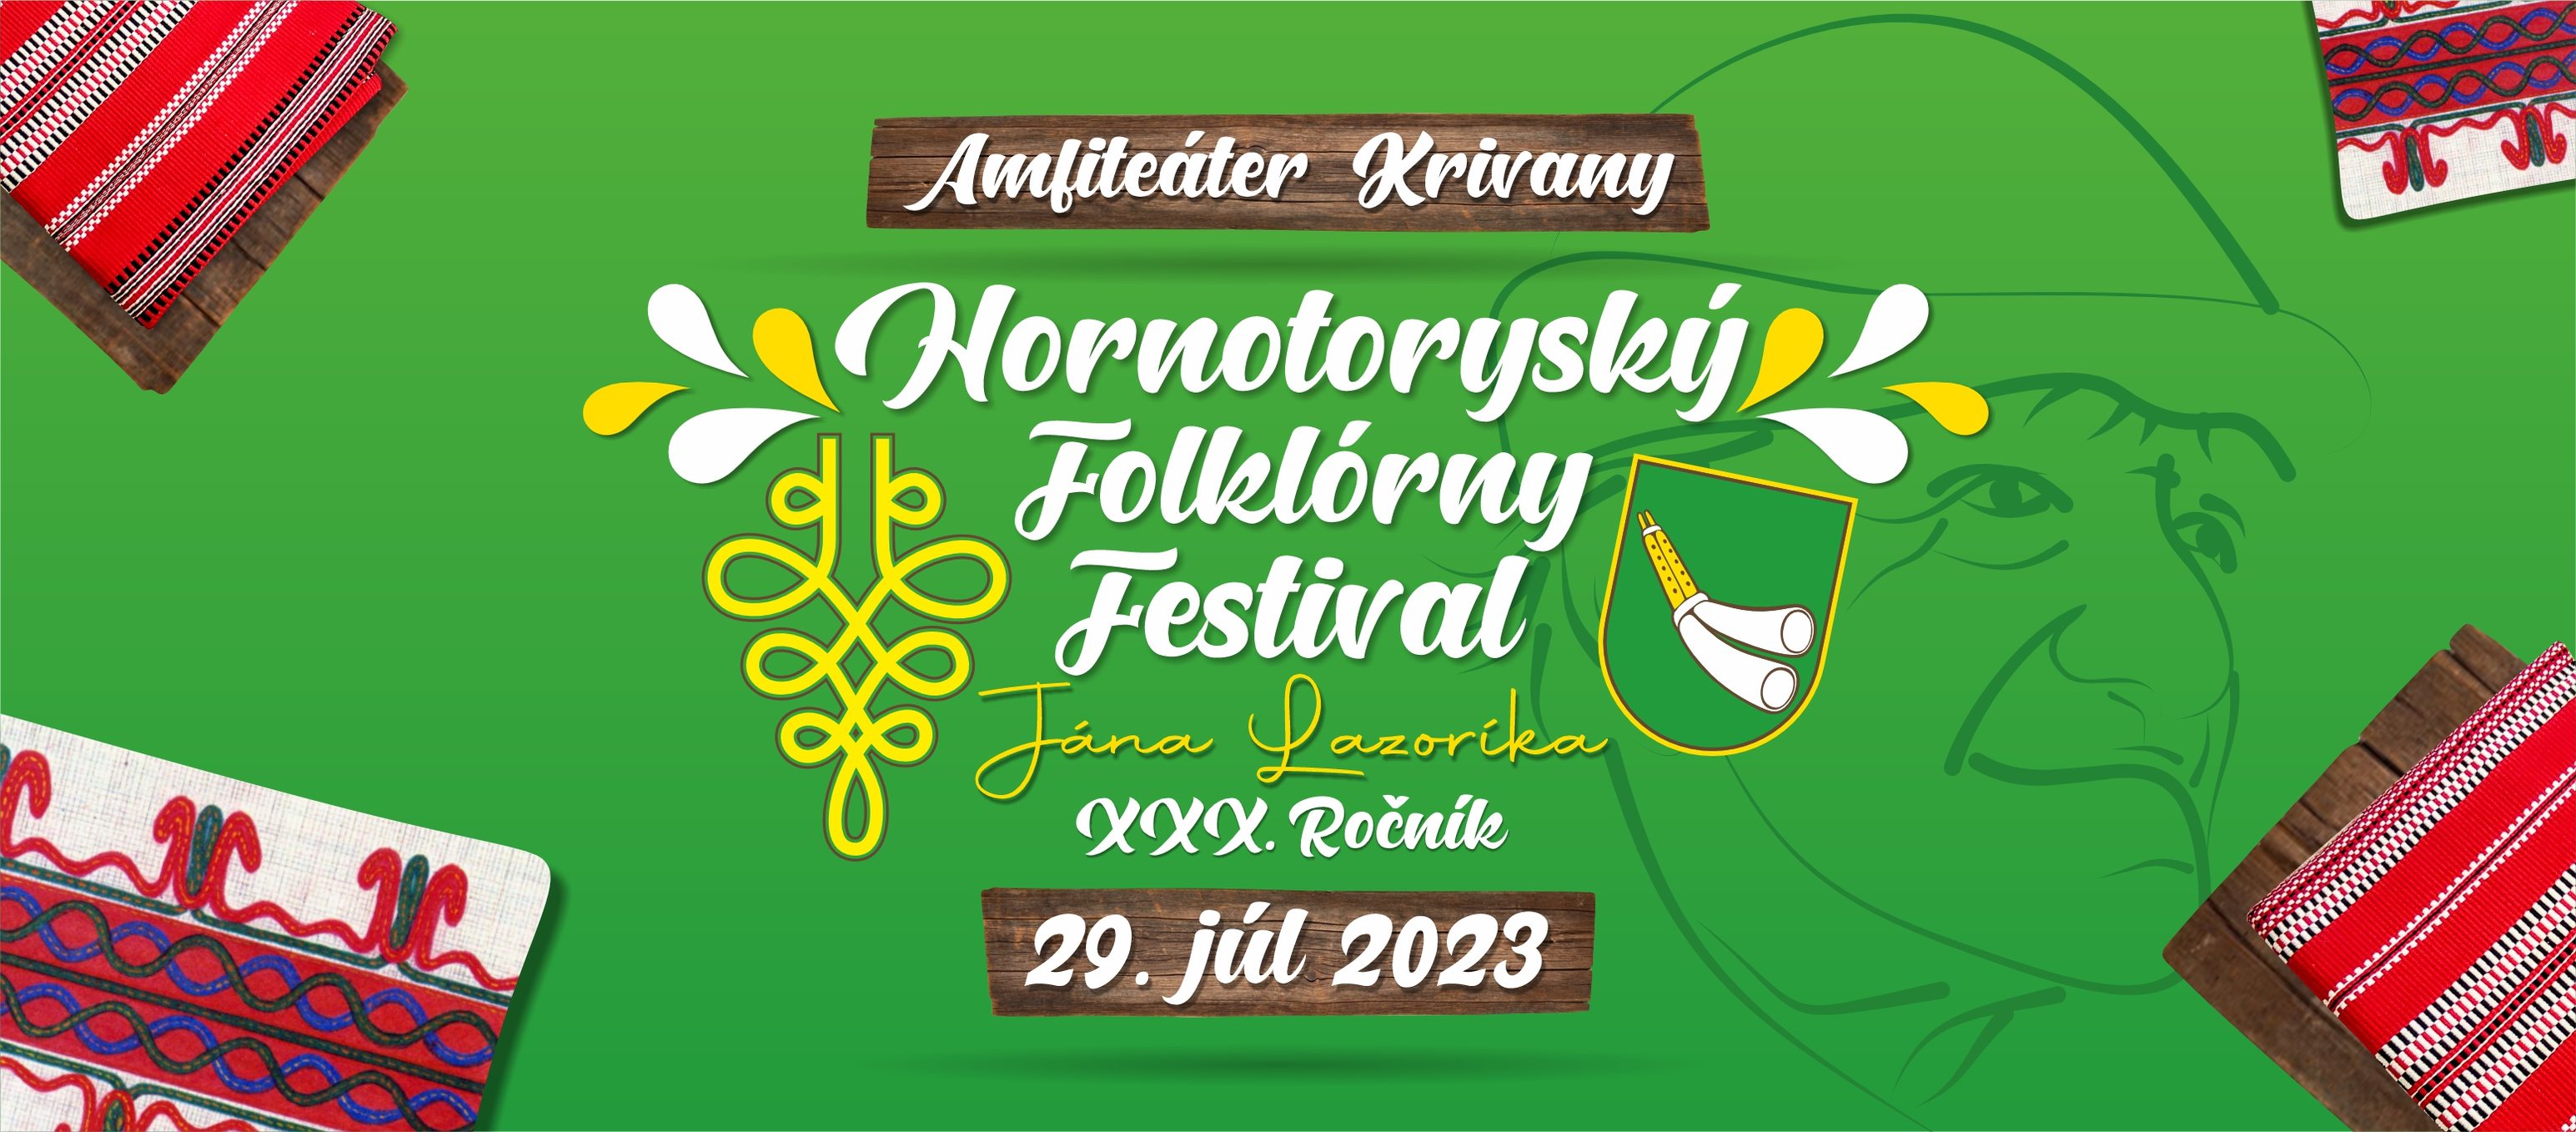 Hornotorysk folklrny festival Jna Lazorka 2023 Krivany - 30. ronk